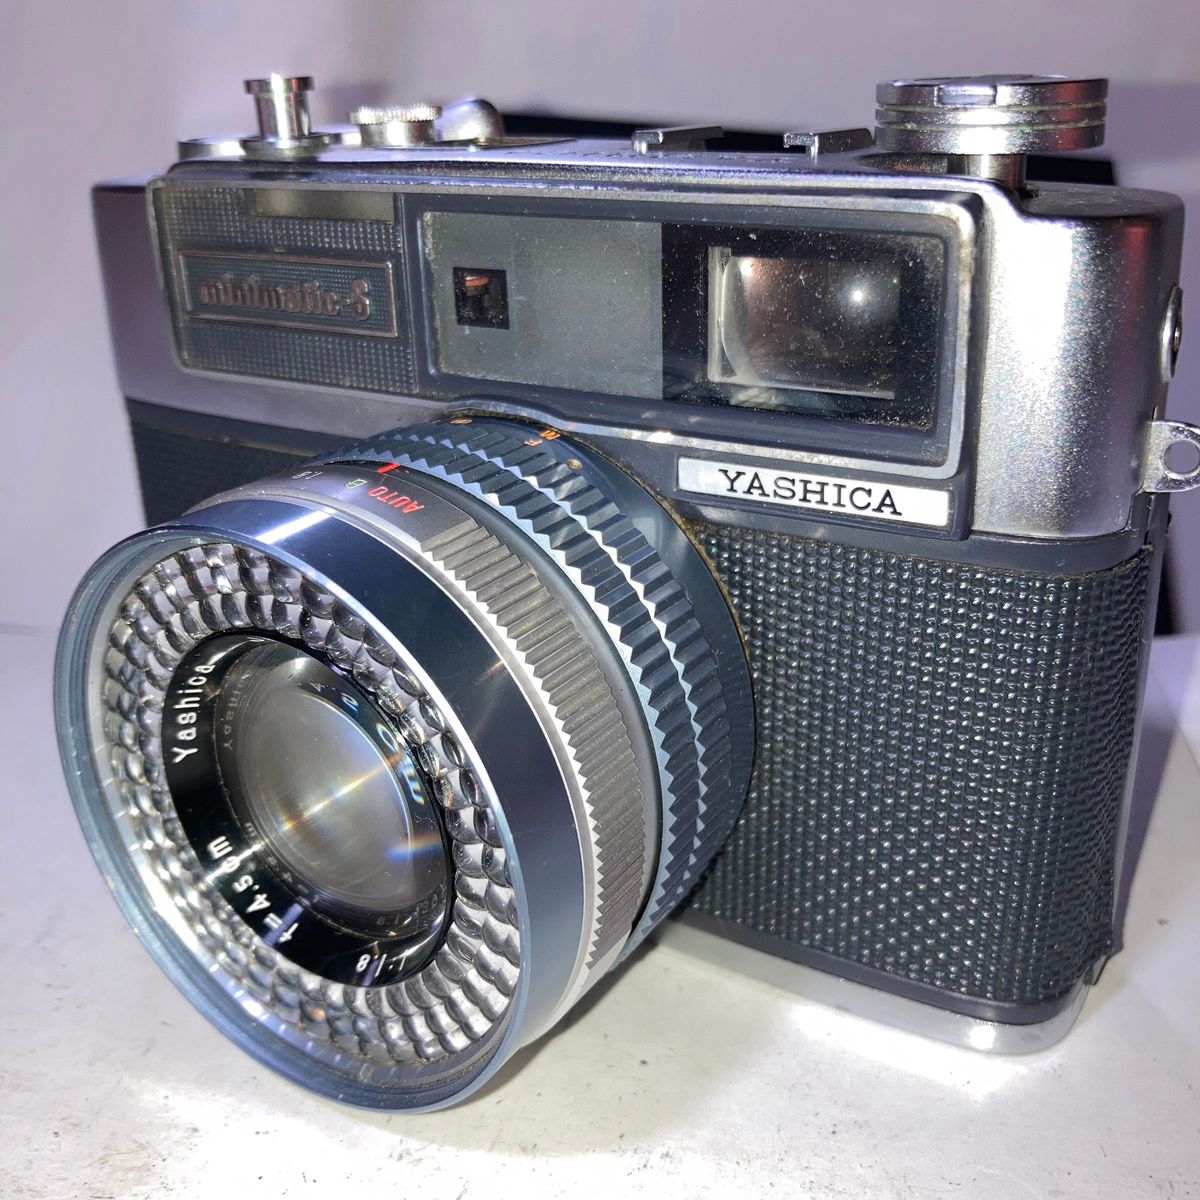 ヤシカm inimatic-Sコンパクトレンジファインダーフィルムカメラ。機能動作確認、即実写可能。レトロ希少品激レアレトロ調